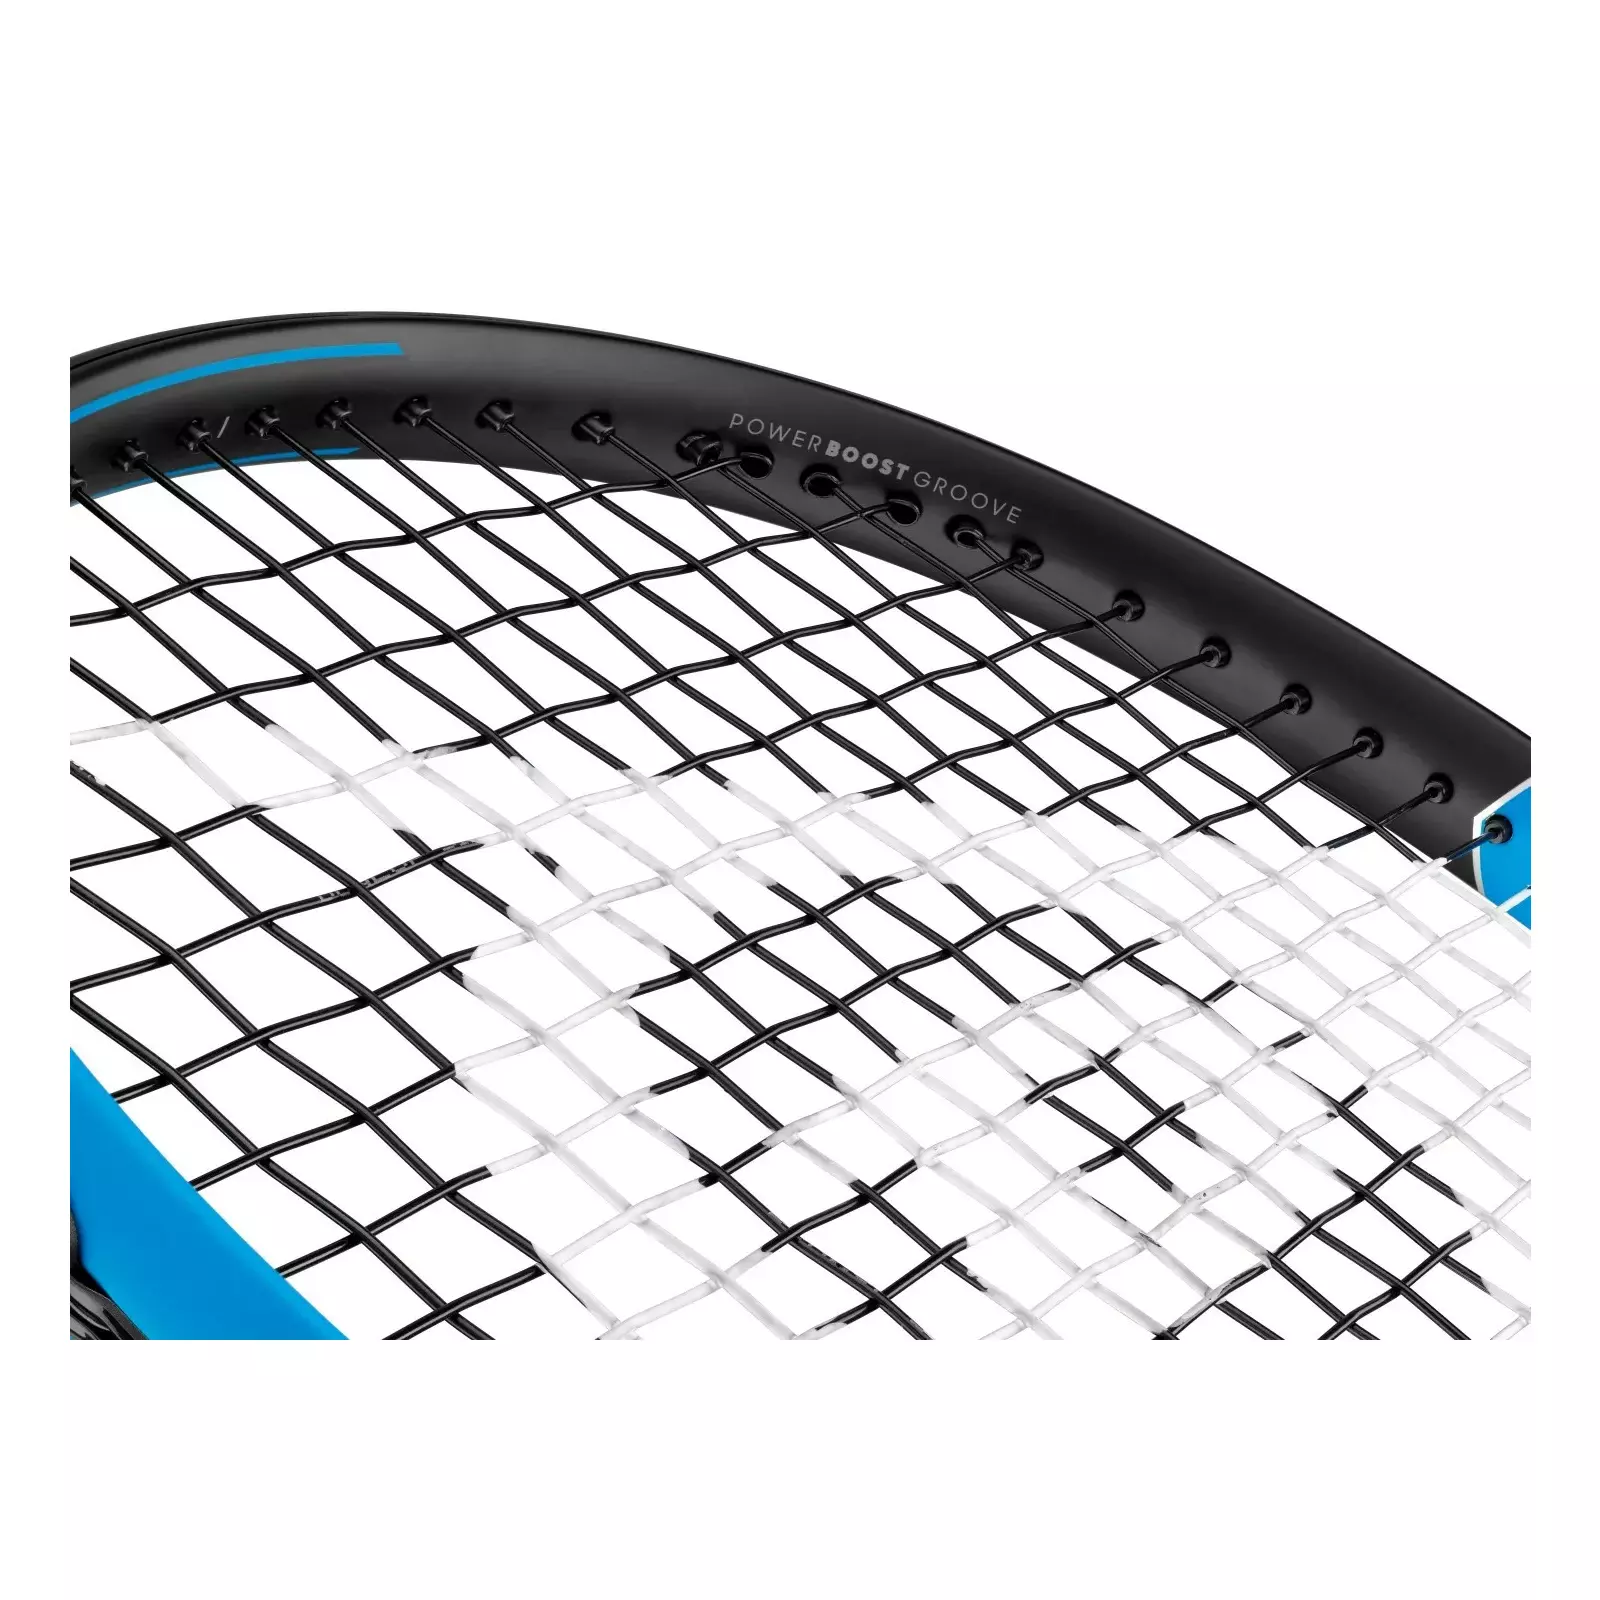 Tennis racket Dunlop FX500 LS 10306279 | Tennis goods | AiO.lv